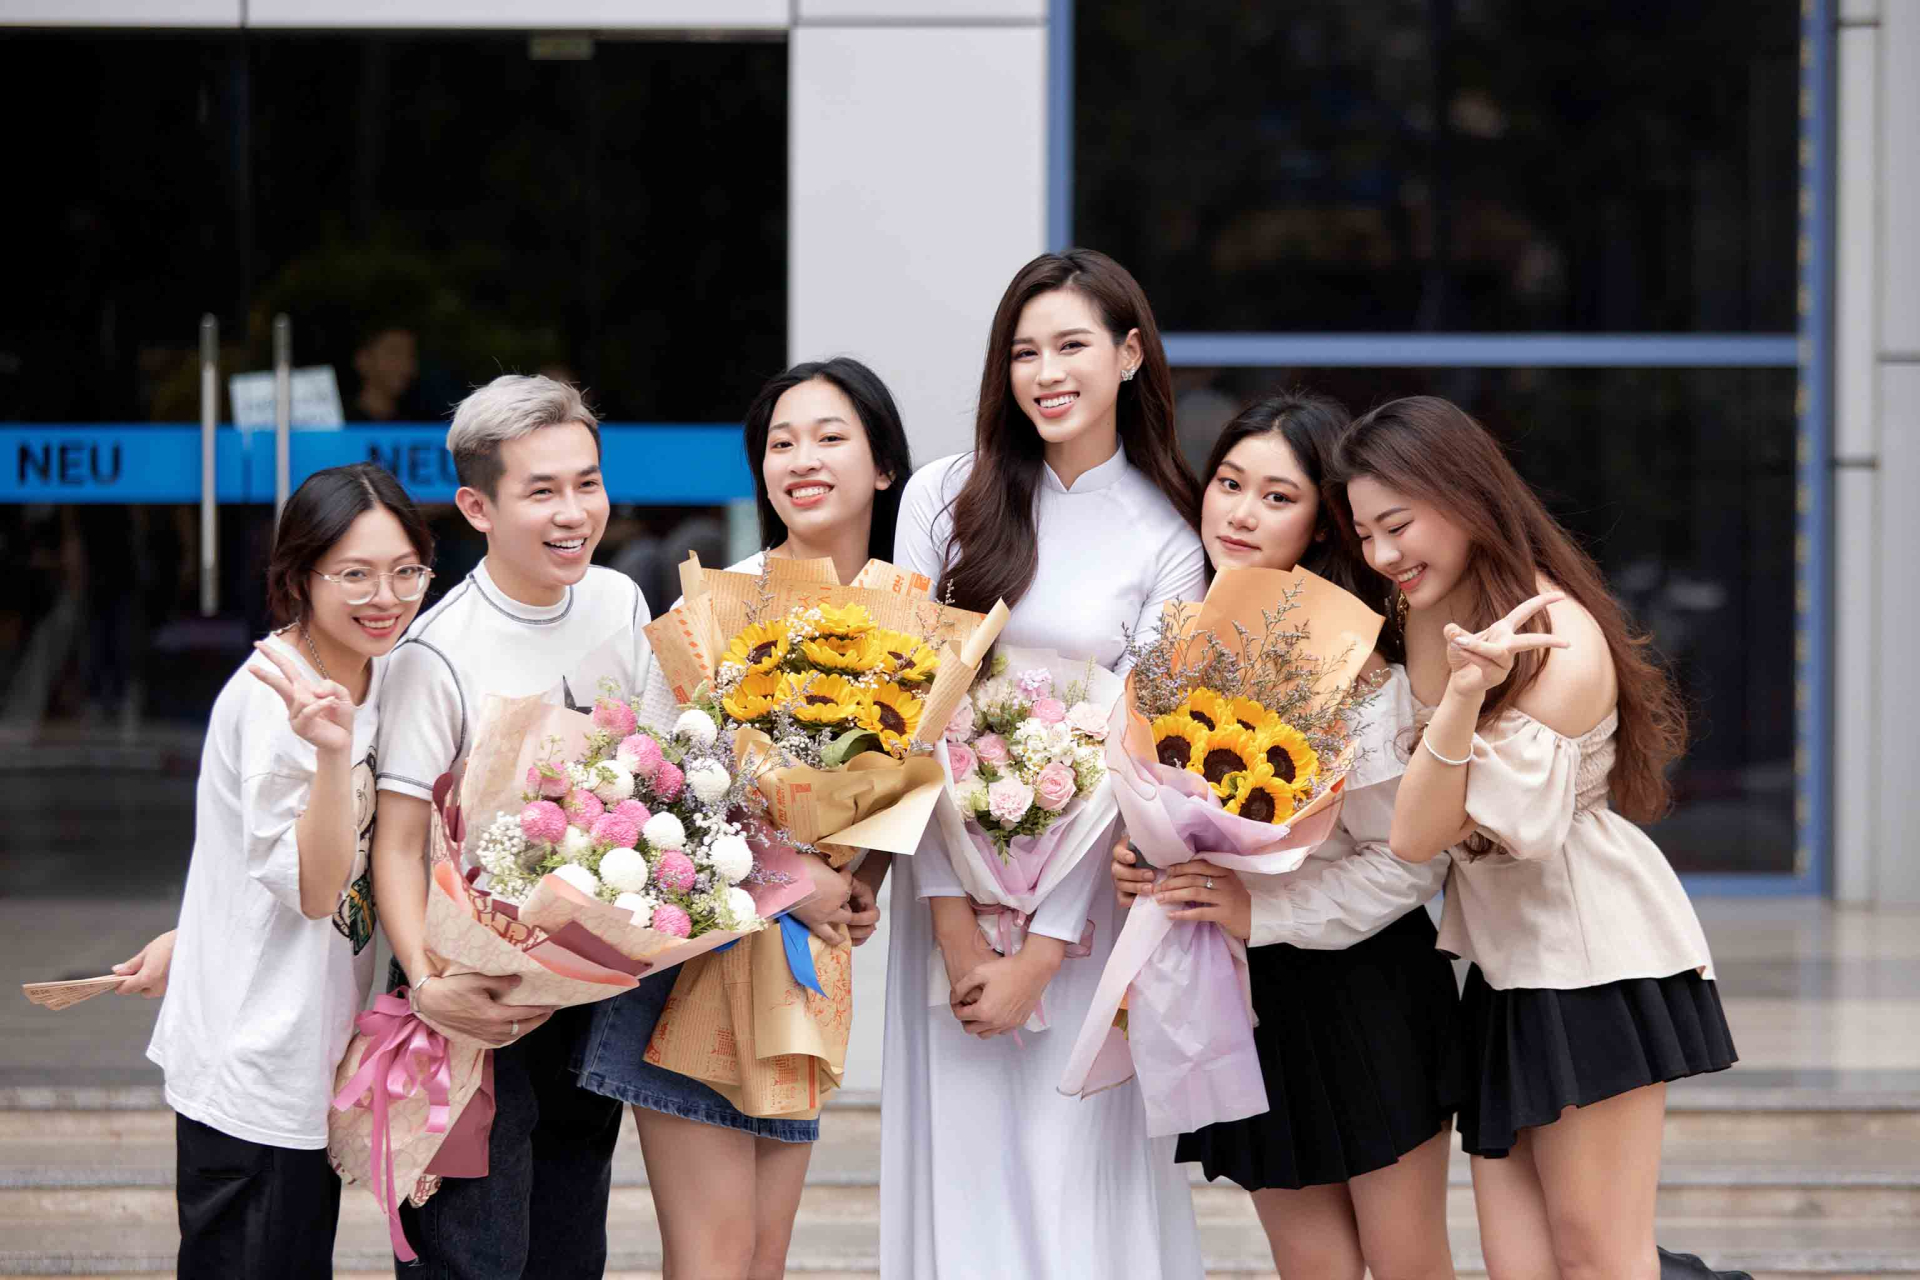 Hoa hậu Việt Nam 2020 Đỗ Thị Hà hiện đang là sinh viên năm cuối ngành Luật Kinh doanh, trường Đại học Kinh tế Quốc dân.